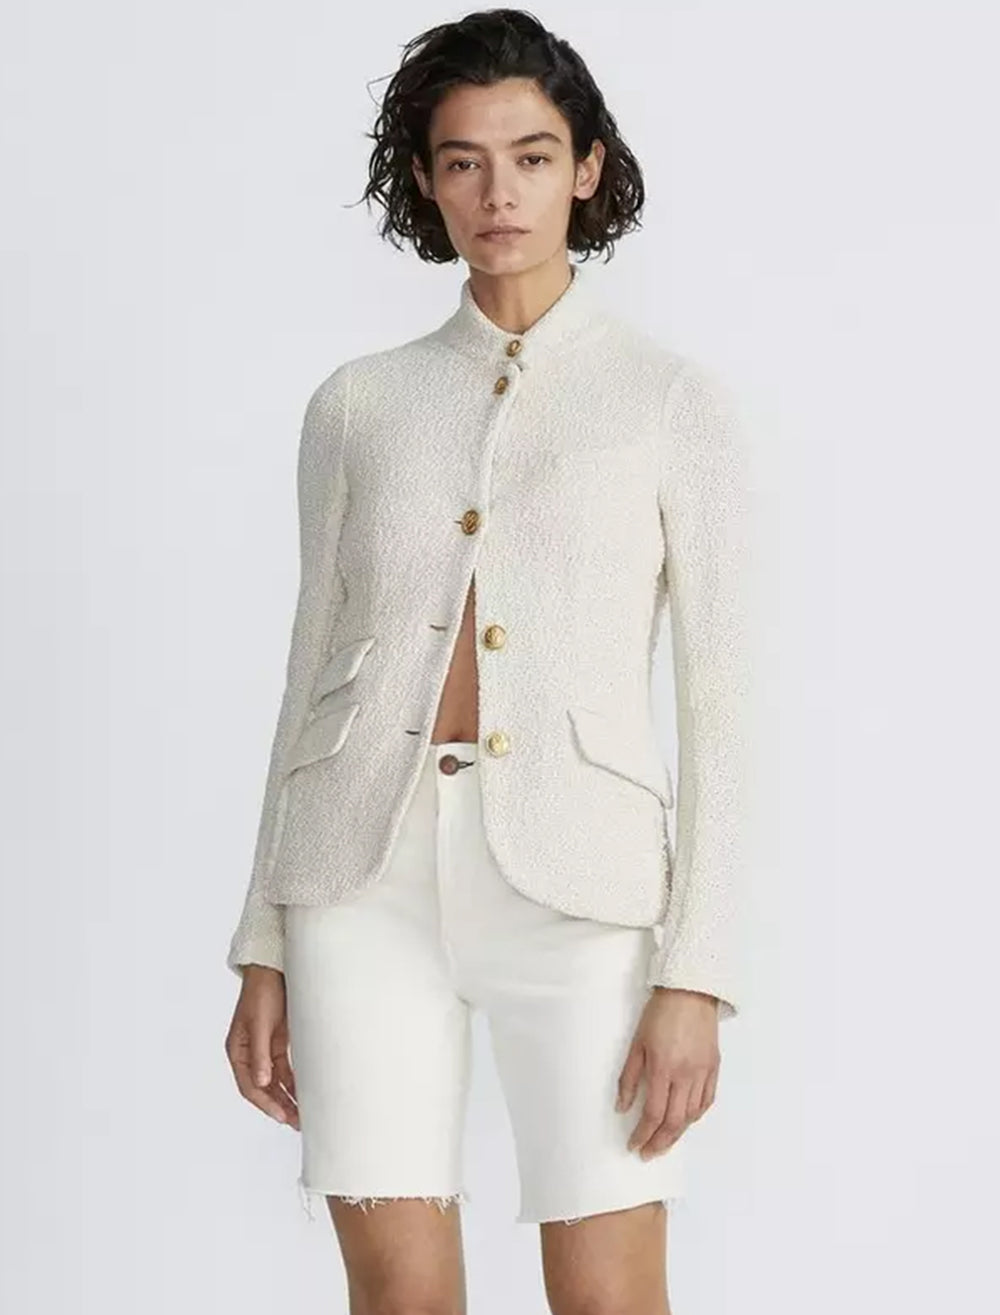 Model wearing Rag & Bone's slade blazer in ecru.